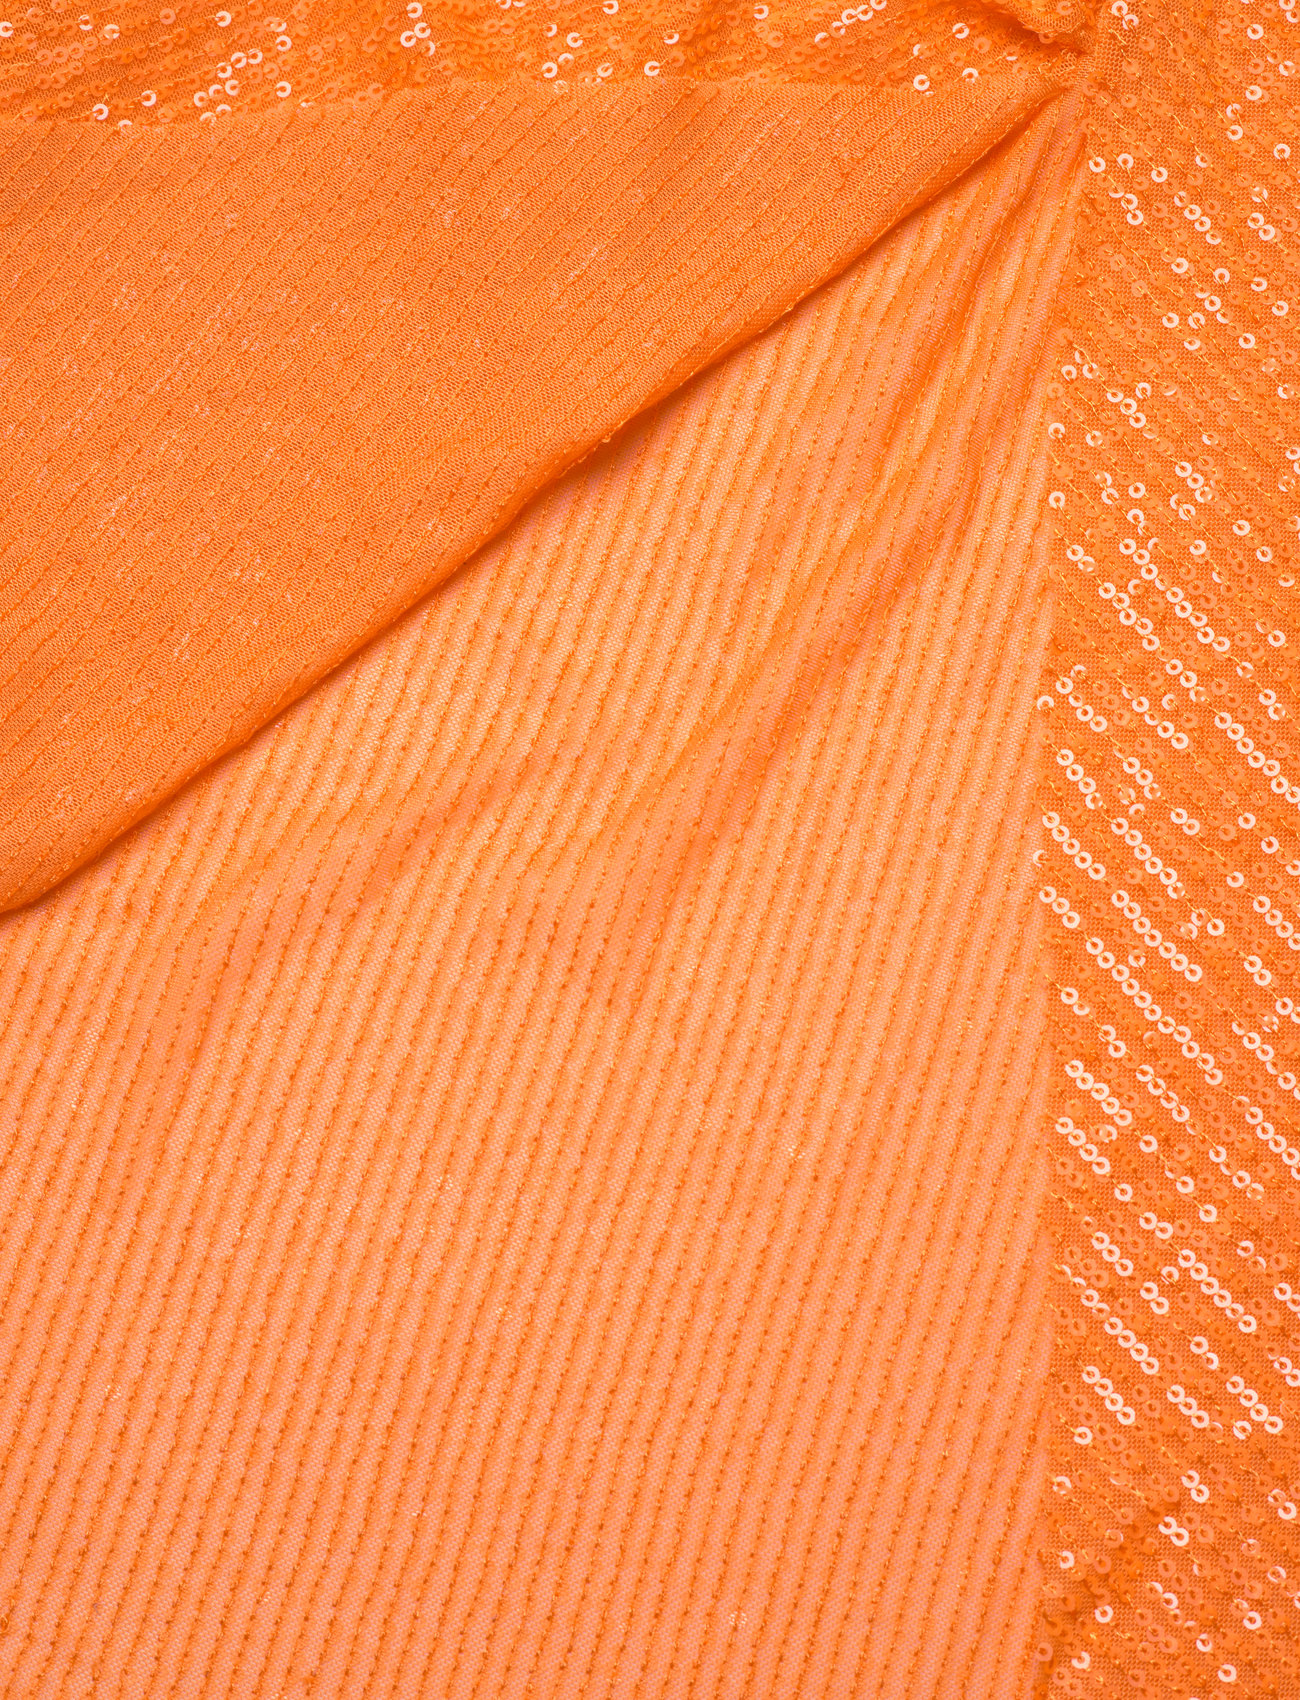 ROTATE Christensen Dress Sequins (Orange Pop), 1008 kr | Stort udvalg af designer mærker Booztlet.com